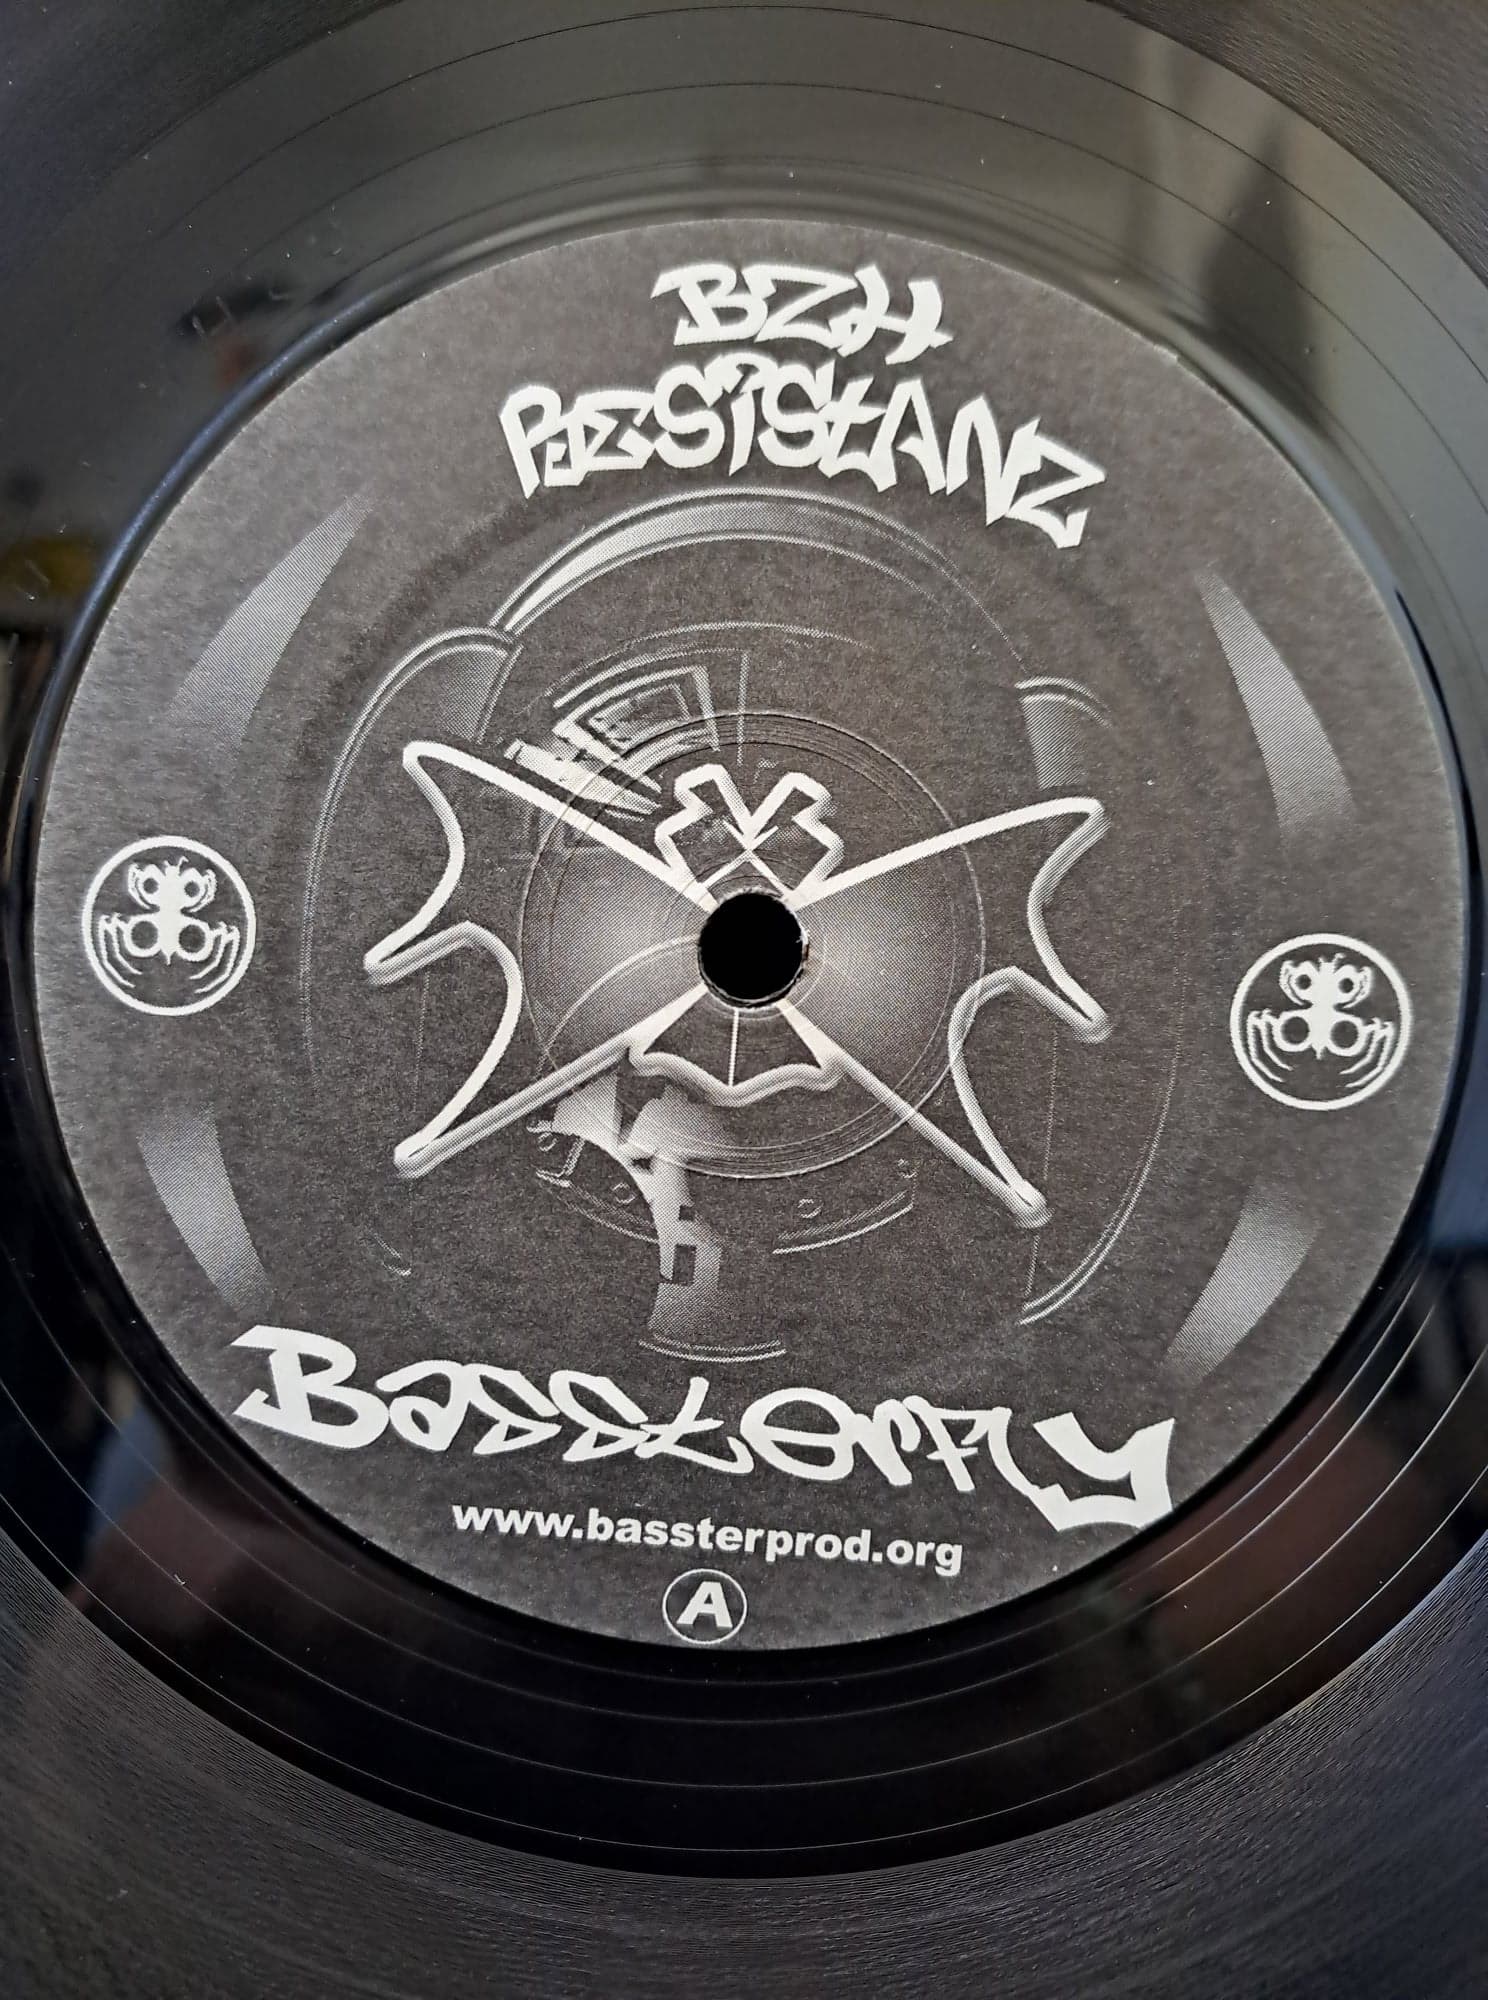 Bzh Resistanz 001 - vinyle hardcore